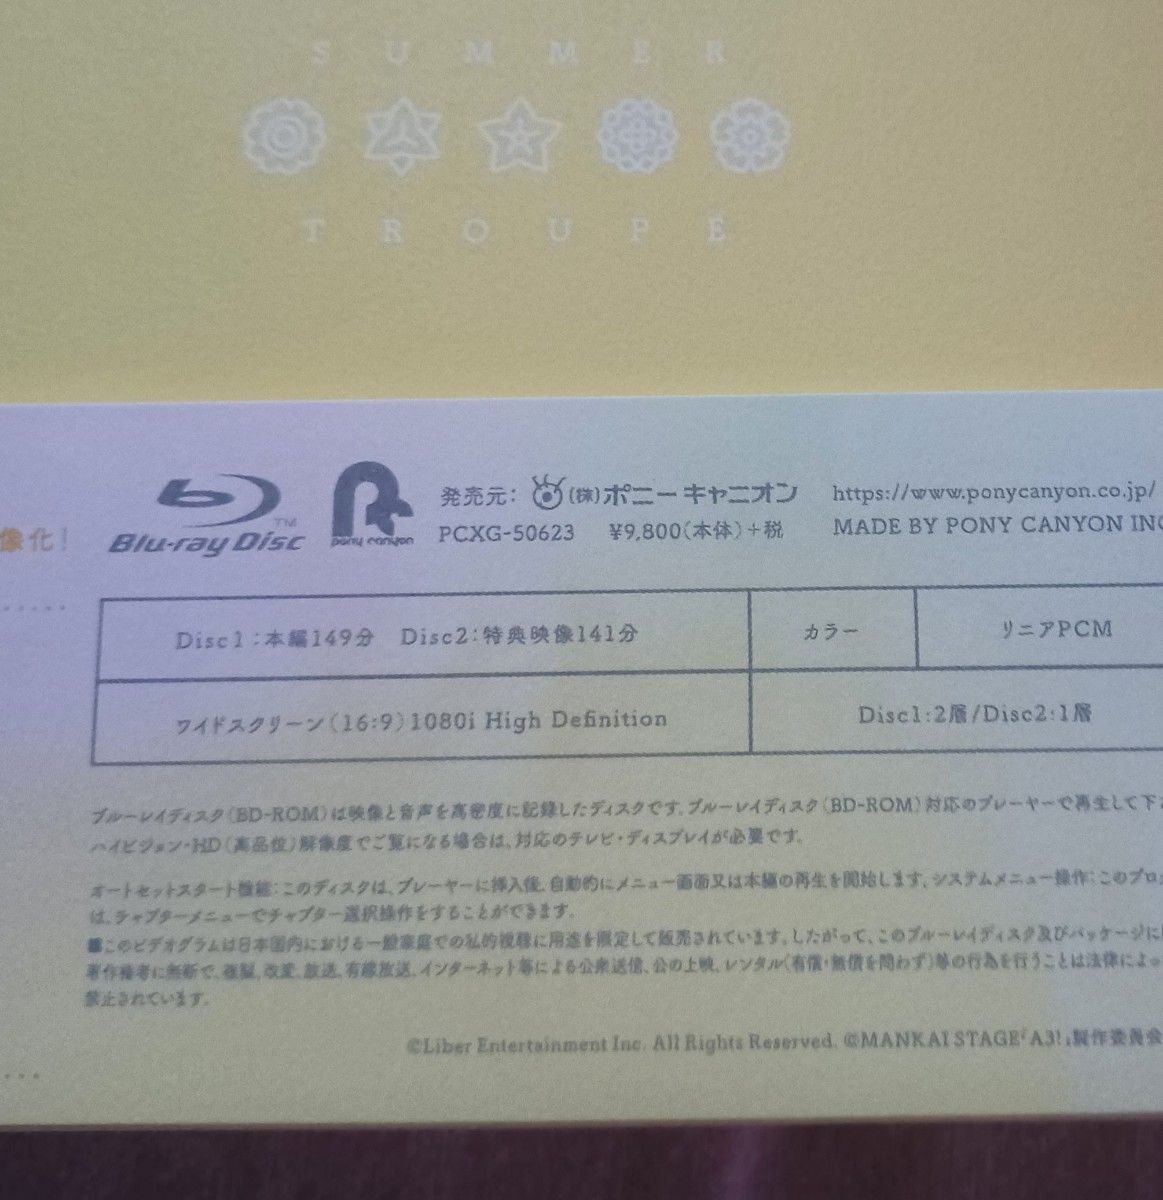 Blu-ray【MANKAI STAGE『A3!』SUMMER 2019】&ブロマイド 夏組  エーステ